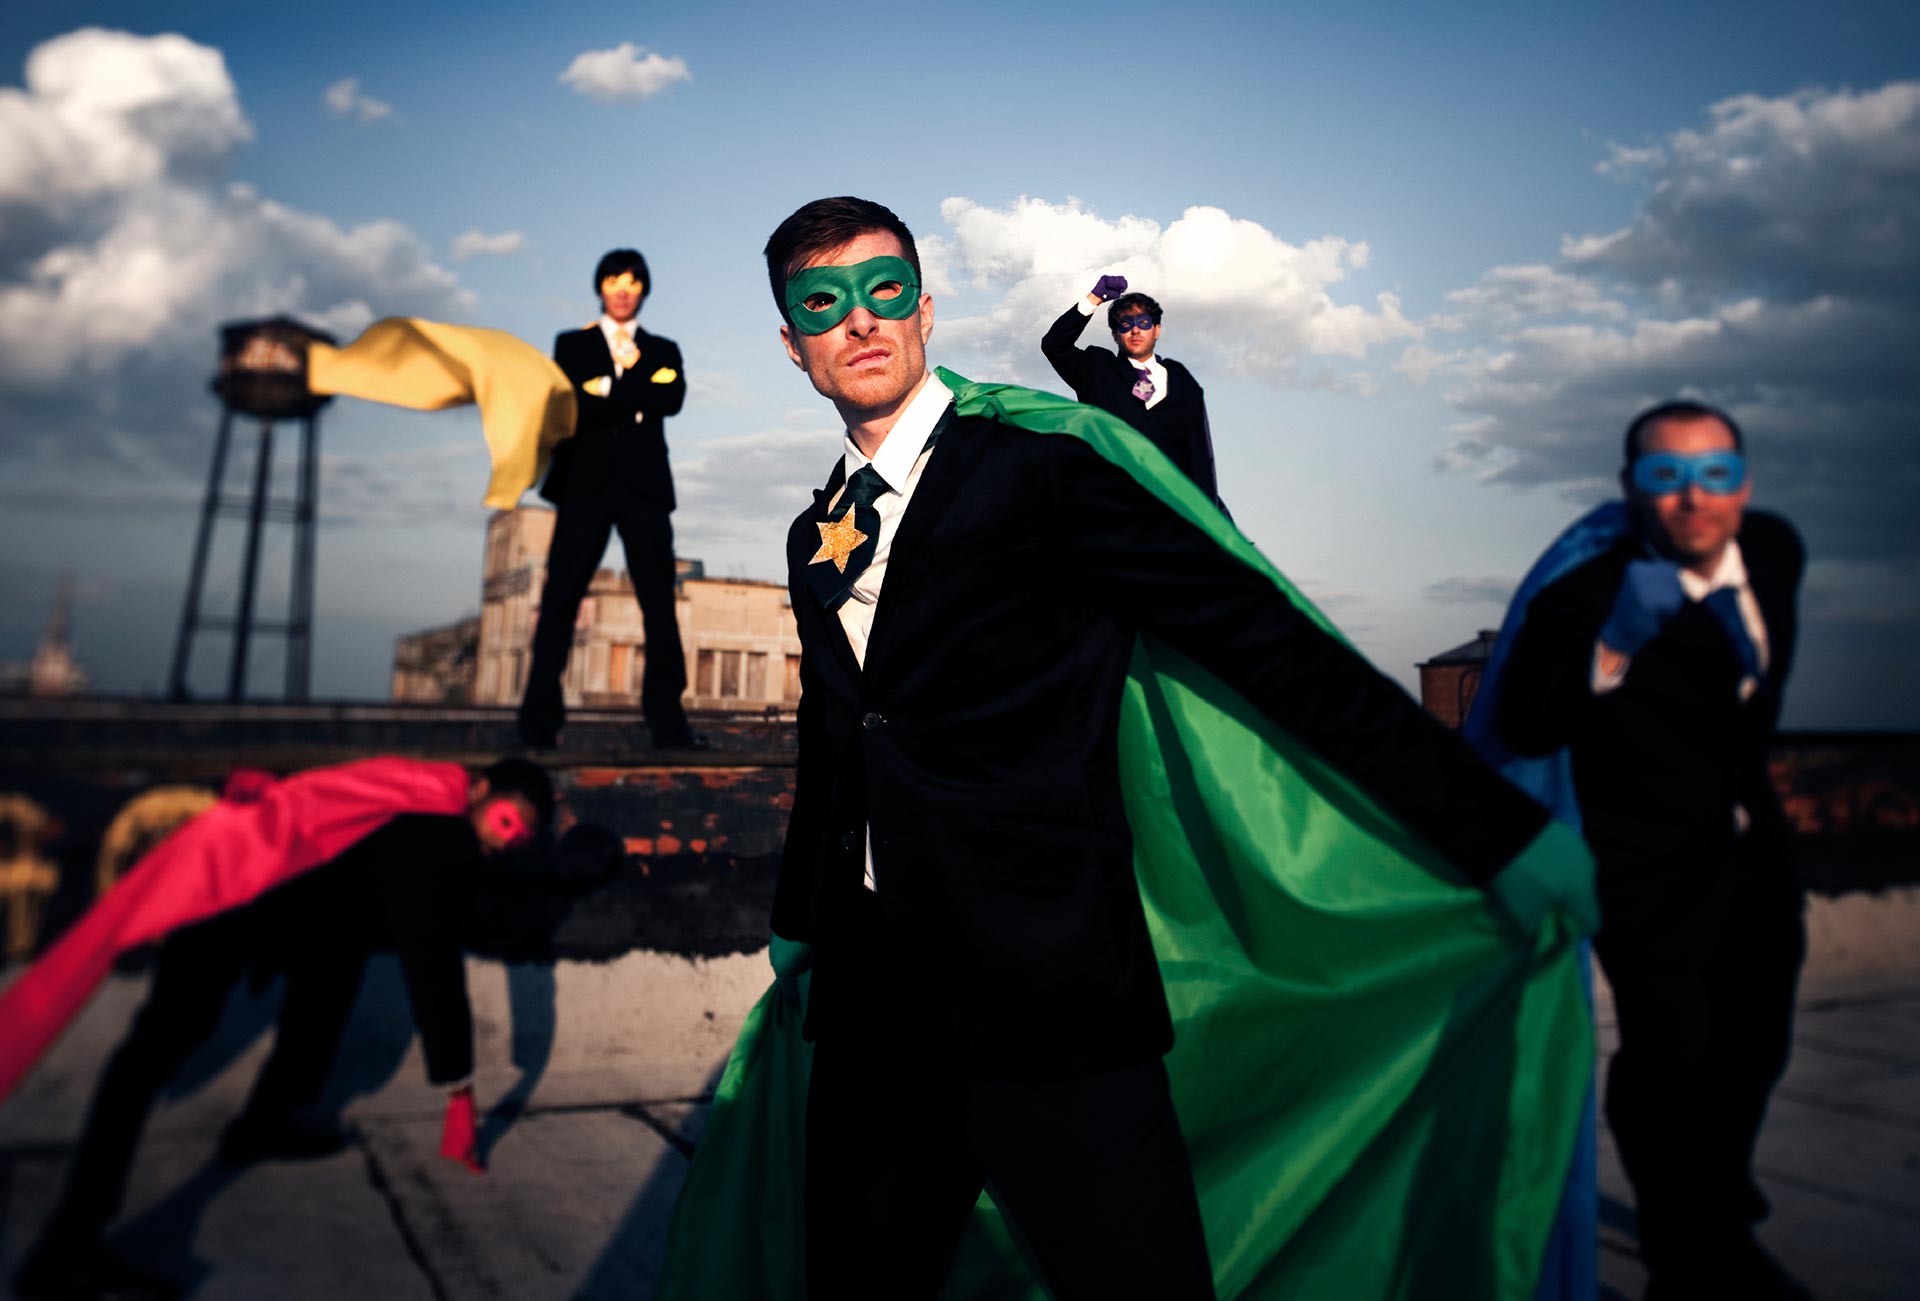 Business men dressed as superheroes